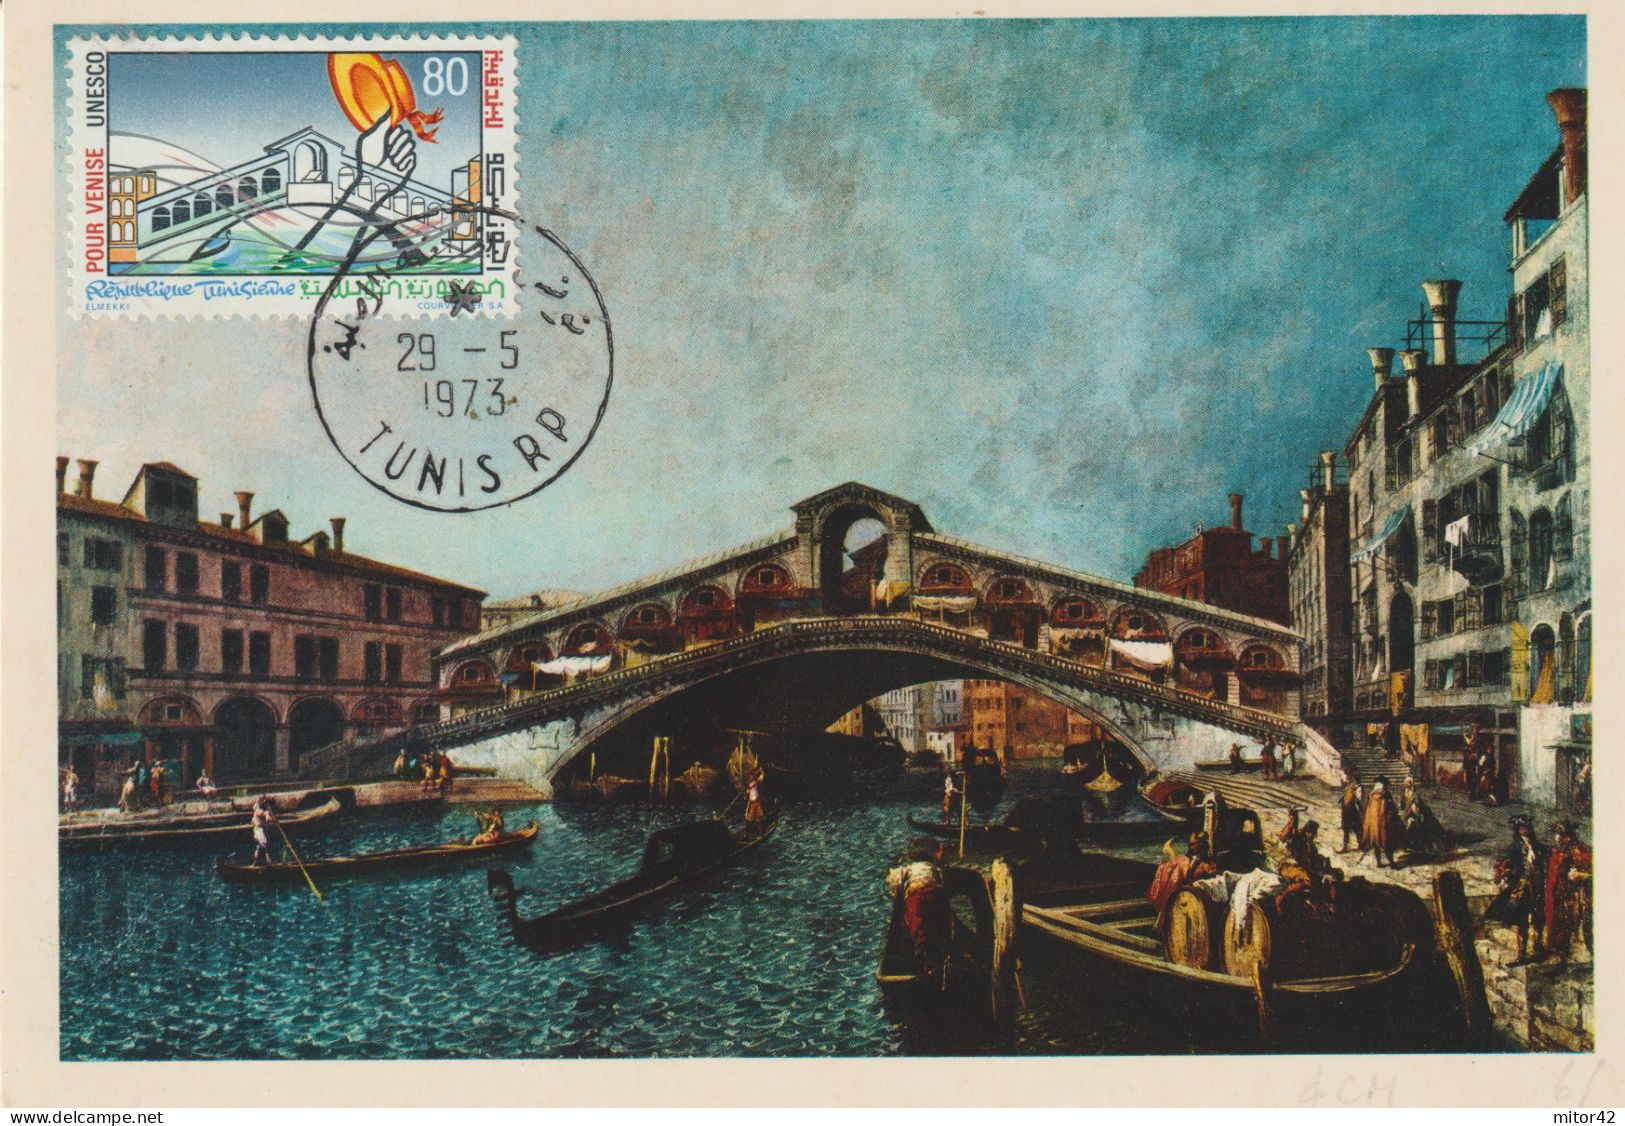 36-Tematica Saluti Da "Italia Nel Mondo"-Tunisia-1973-Venezia-Cartolina Maximum Con Annullo Speciale - Souvenir De...